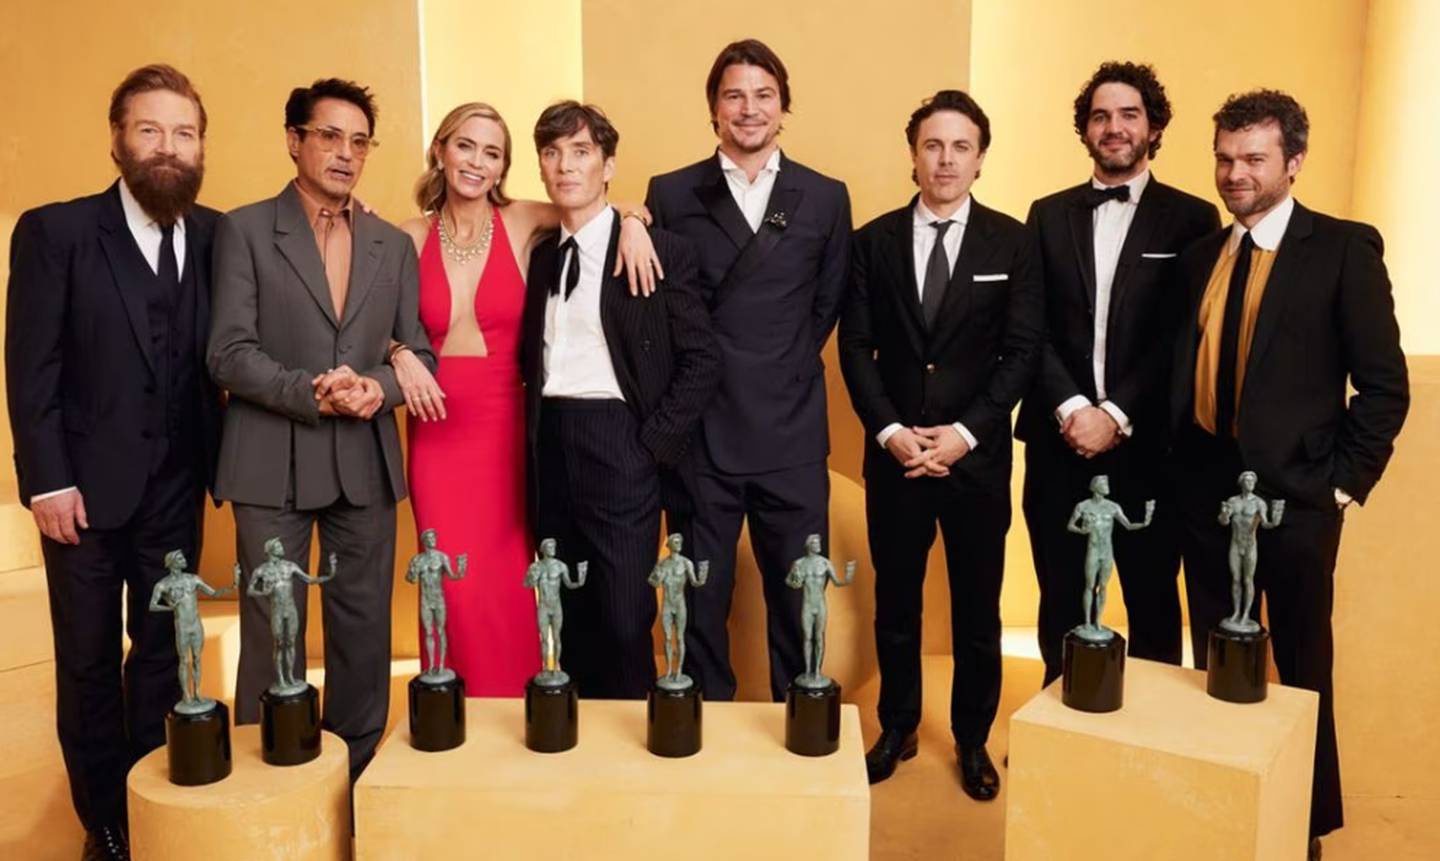 El elenco de 'Oppenheimer' celebró a lo grande en la noche de los Premios Sag. Se perfila este filme como posible ganador de los Premios Oscar. Foto: AFP